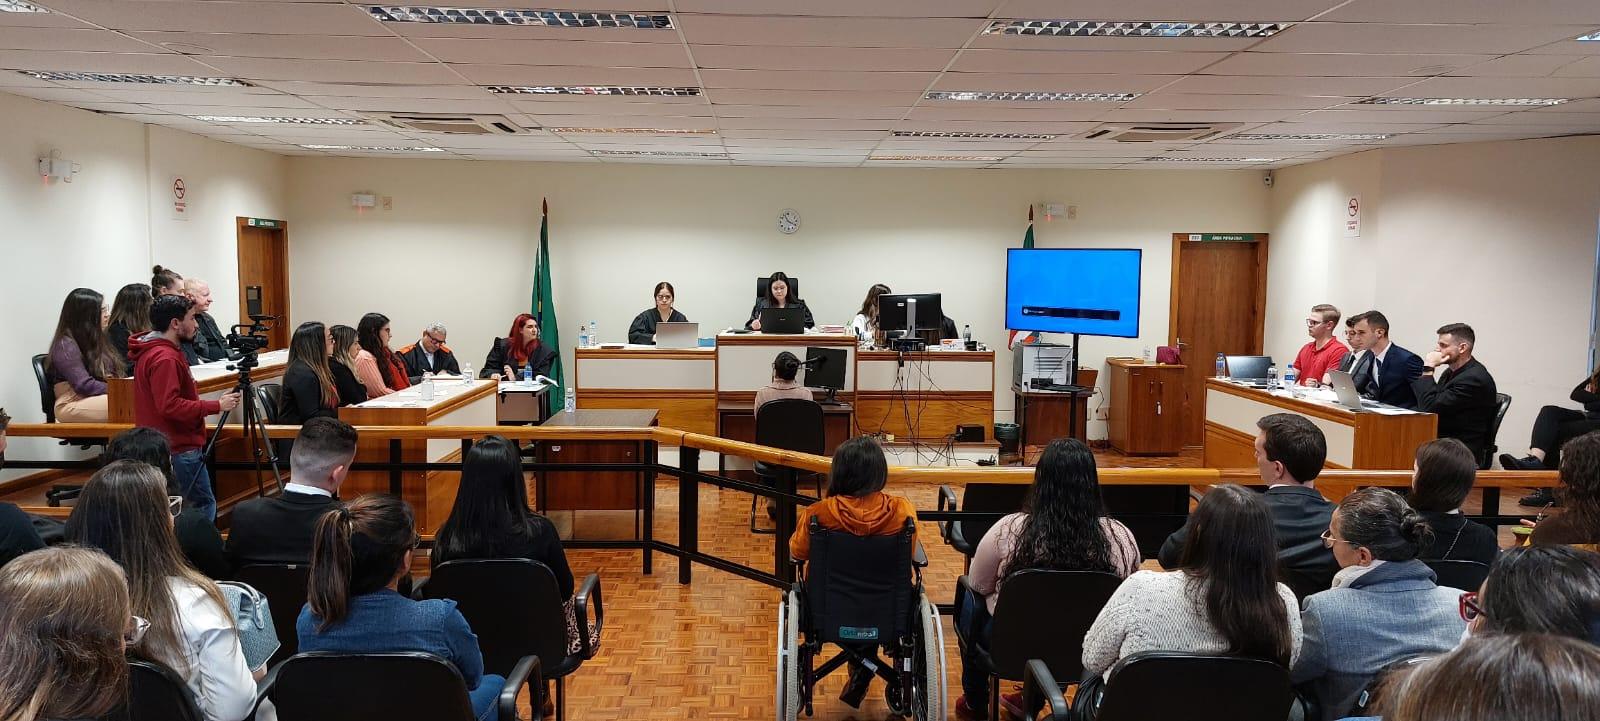 Atividade foi executada pela primeira turma de Direito do Campus São Borja da Unipampa